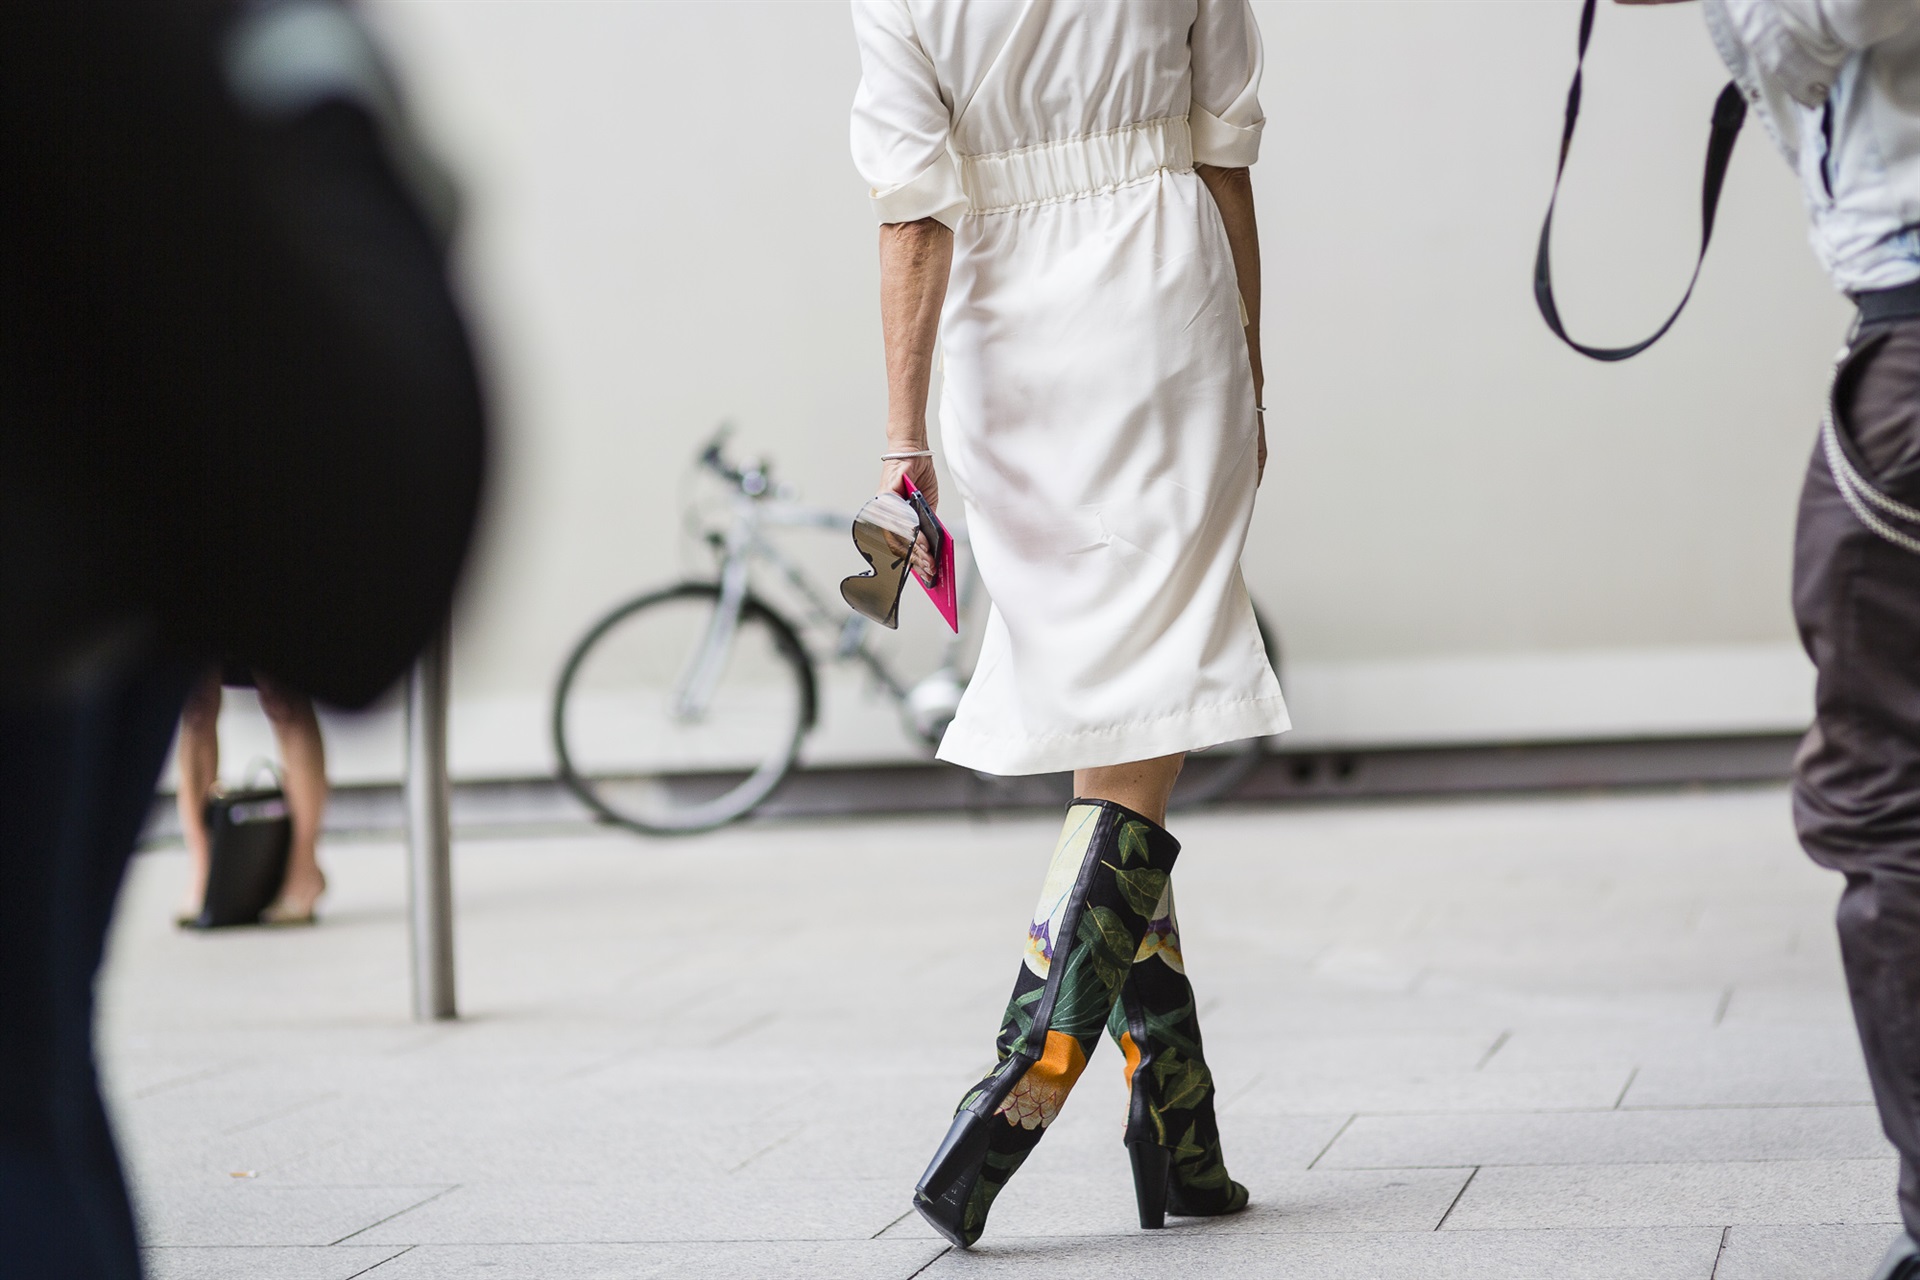 Paris Moda Haftası 2014 - 2015 Sonbahar/Kış Couture Sokak Stili - 2. Gün